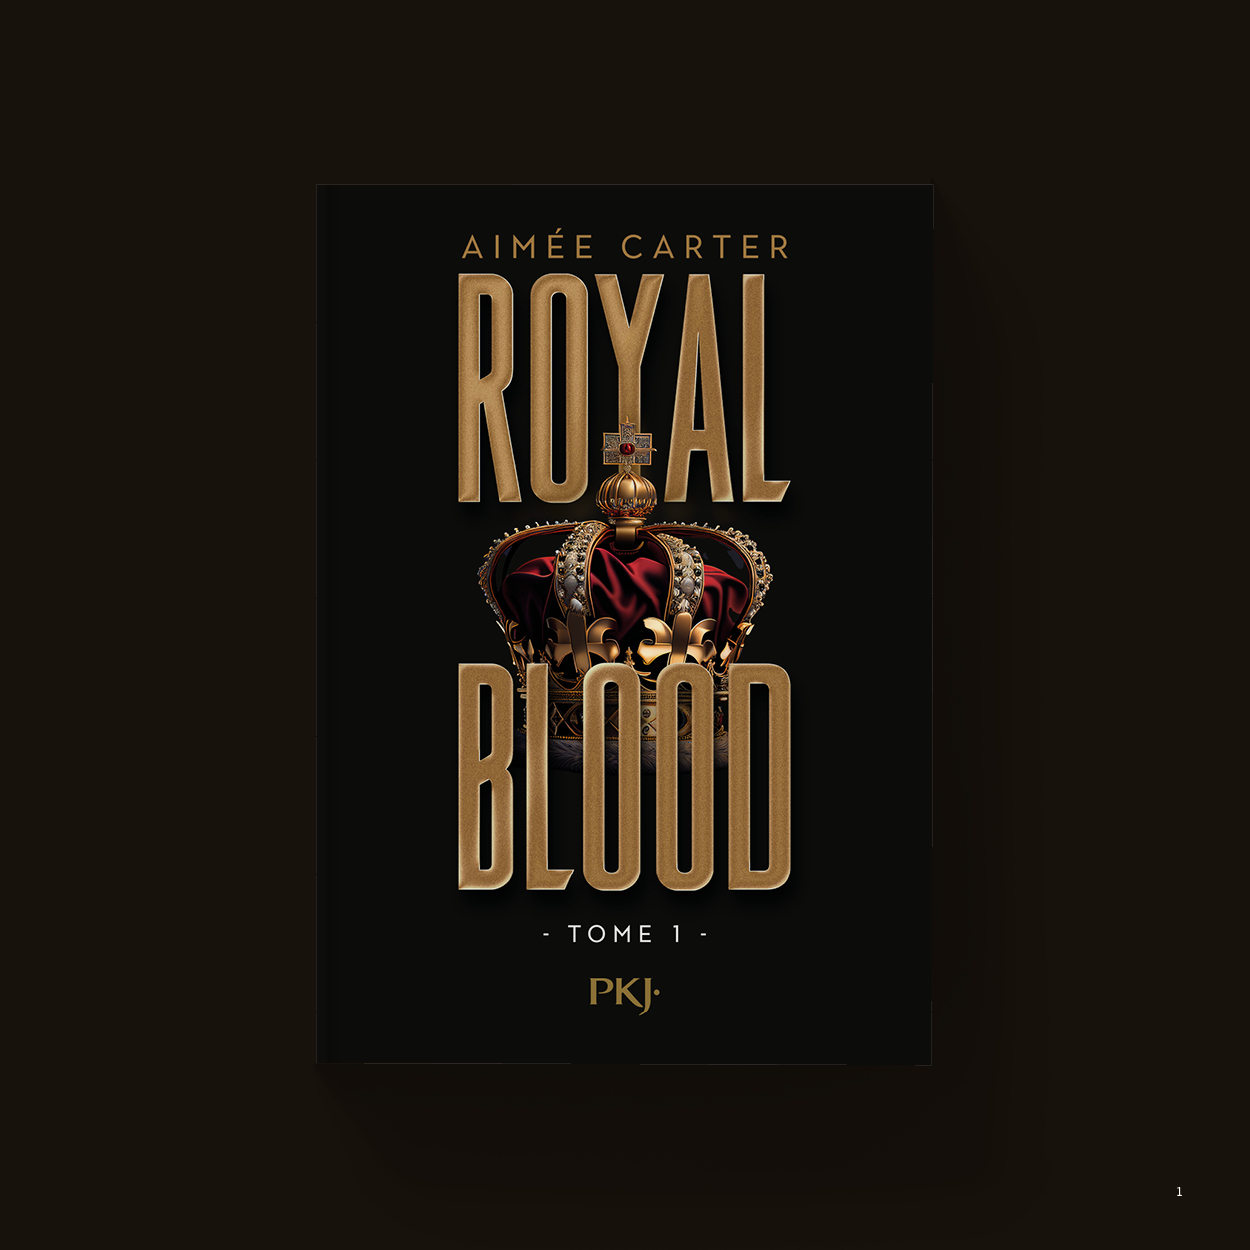 Vue_Royal_blood_1